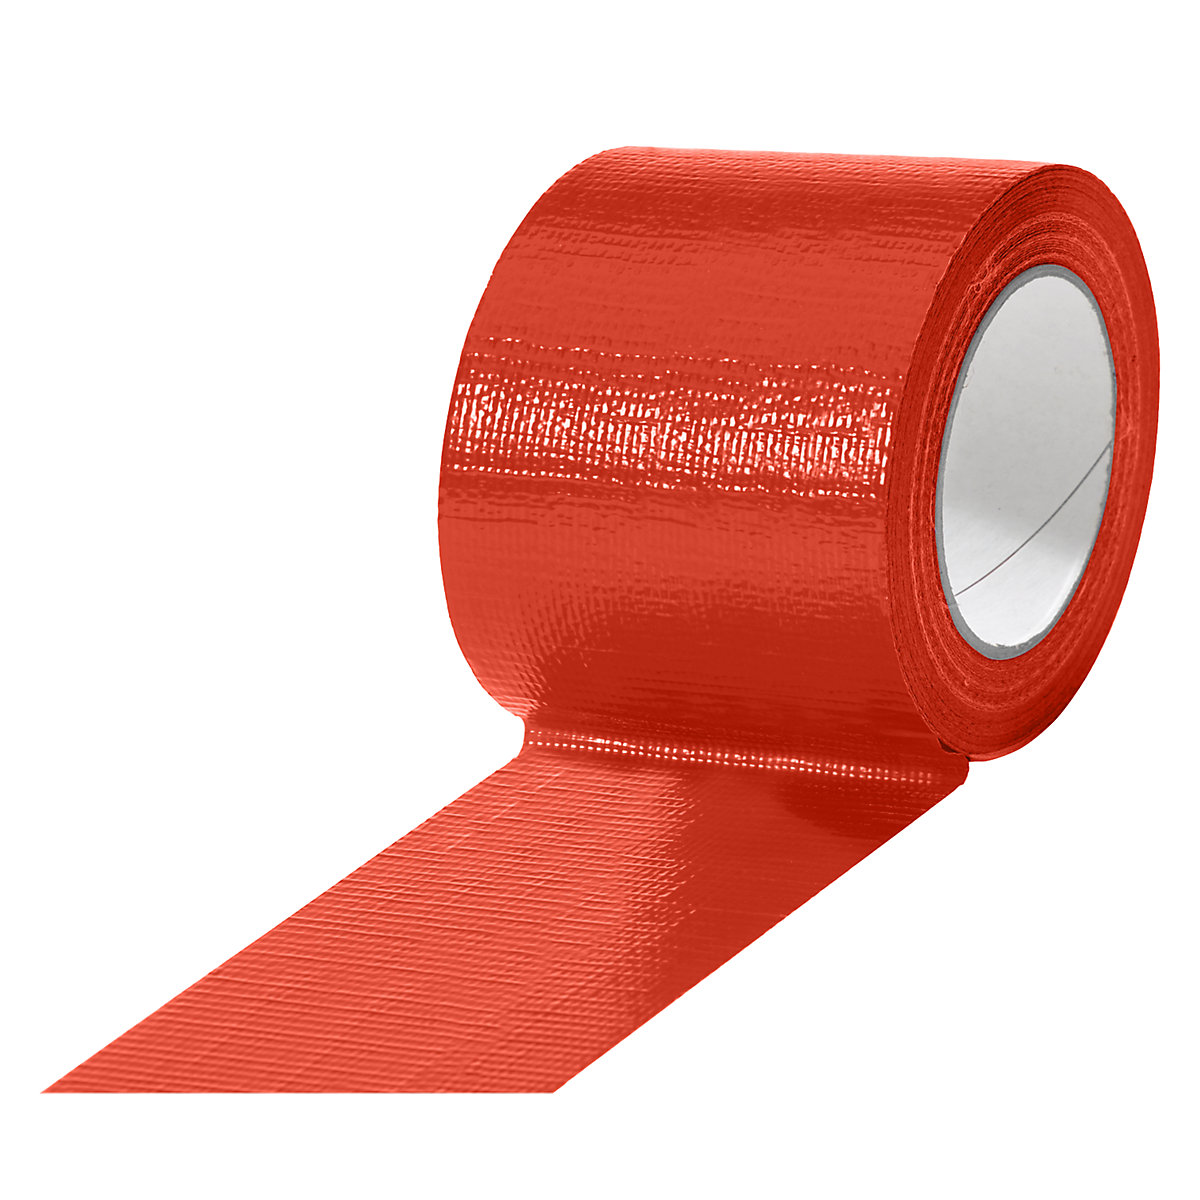 Traka od tkanine, u različitim bojama, pak. 12 rola, u crvenoj boji, širina trake 75 mm